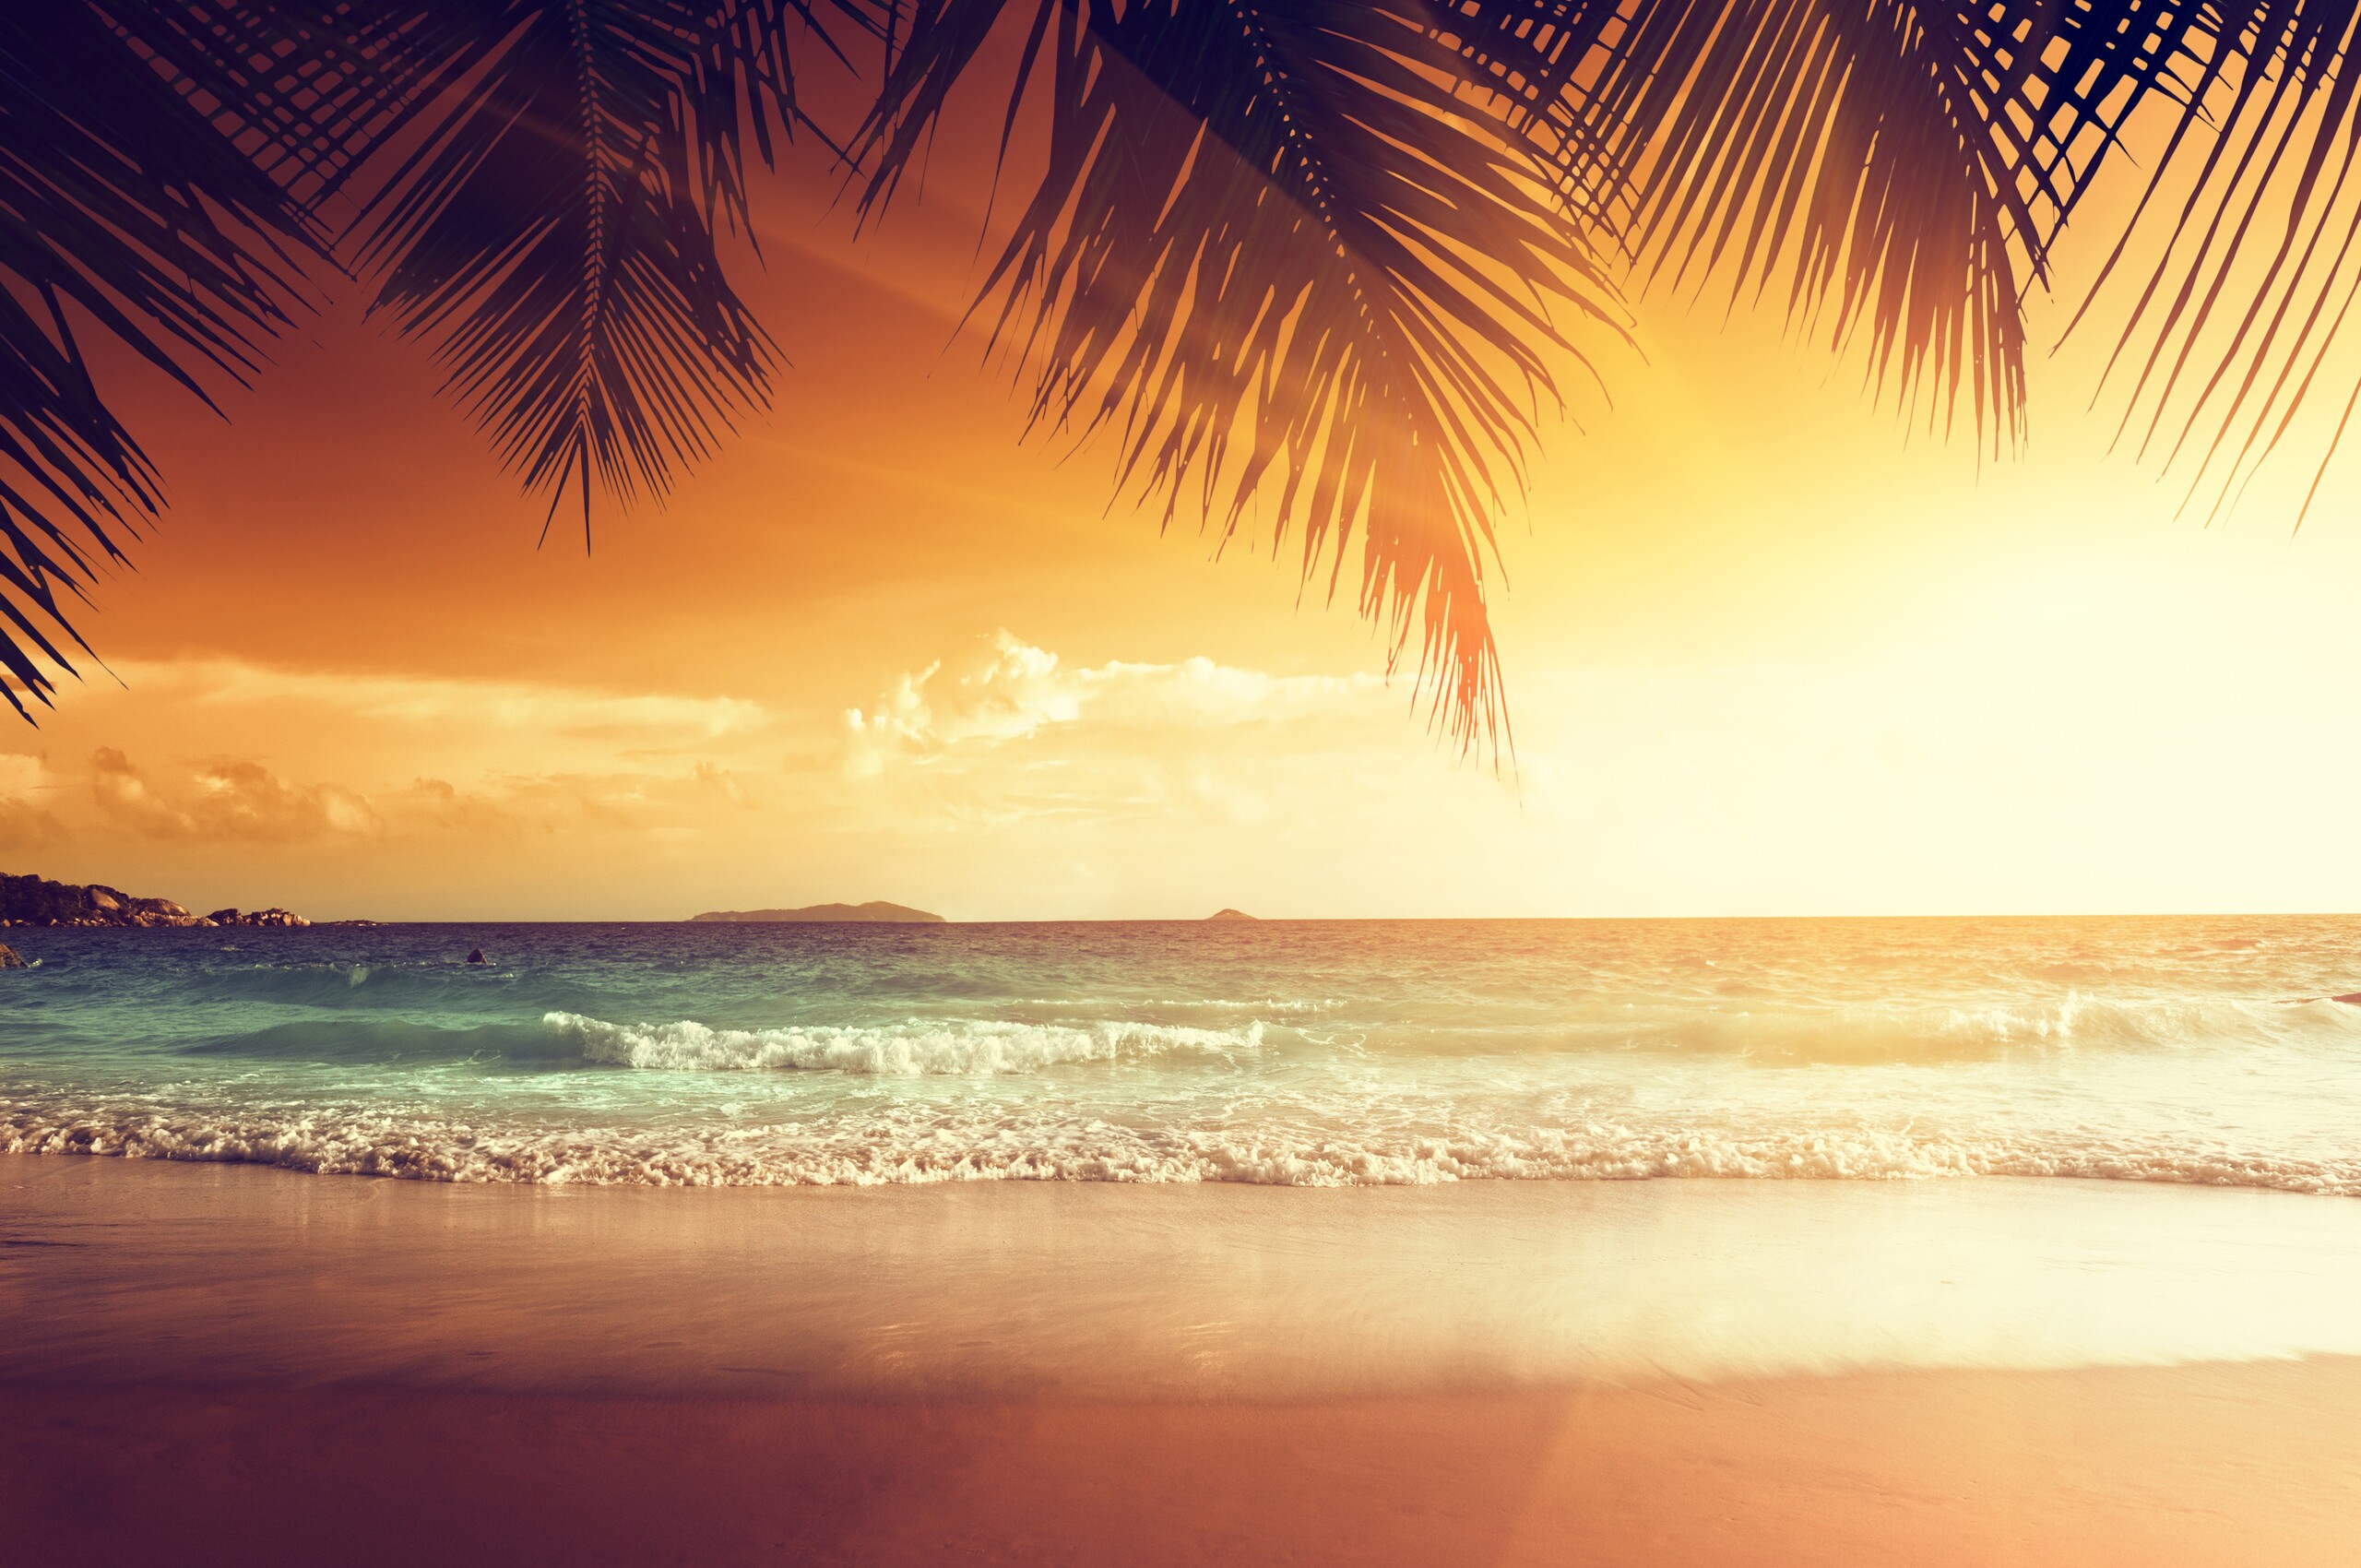 A beach with palm trees and the sun setting - Beach, sun, tropical